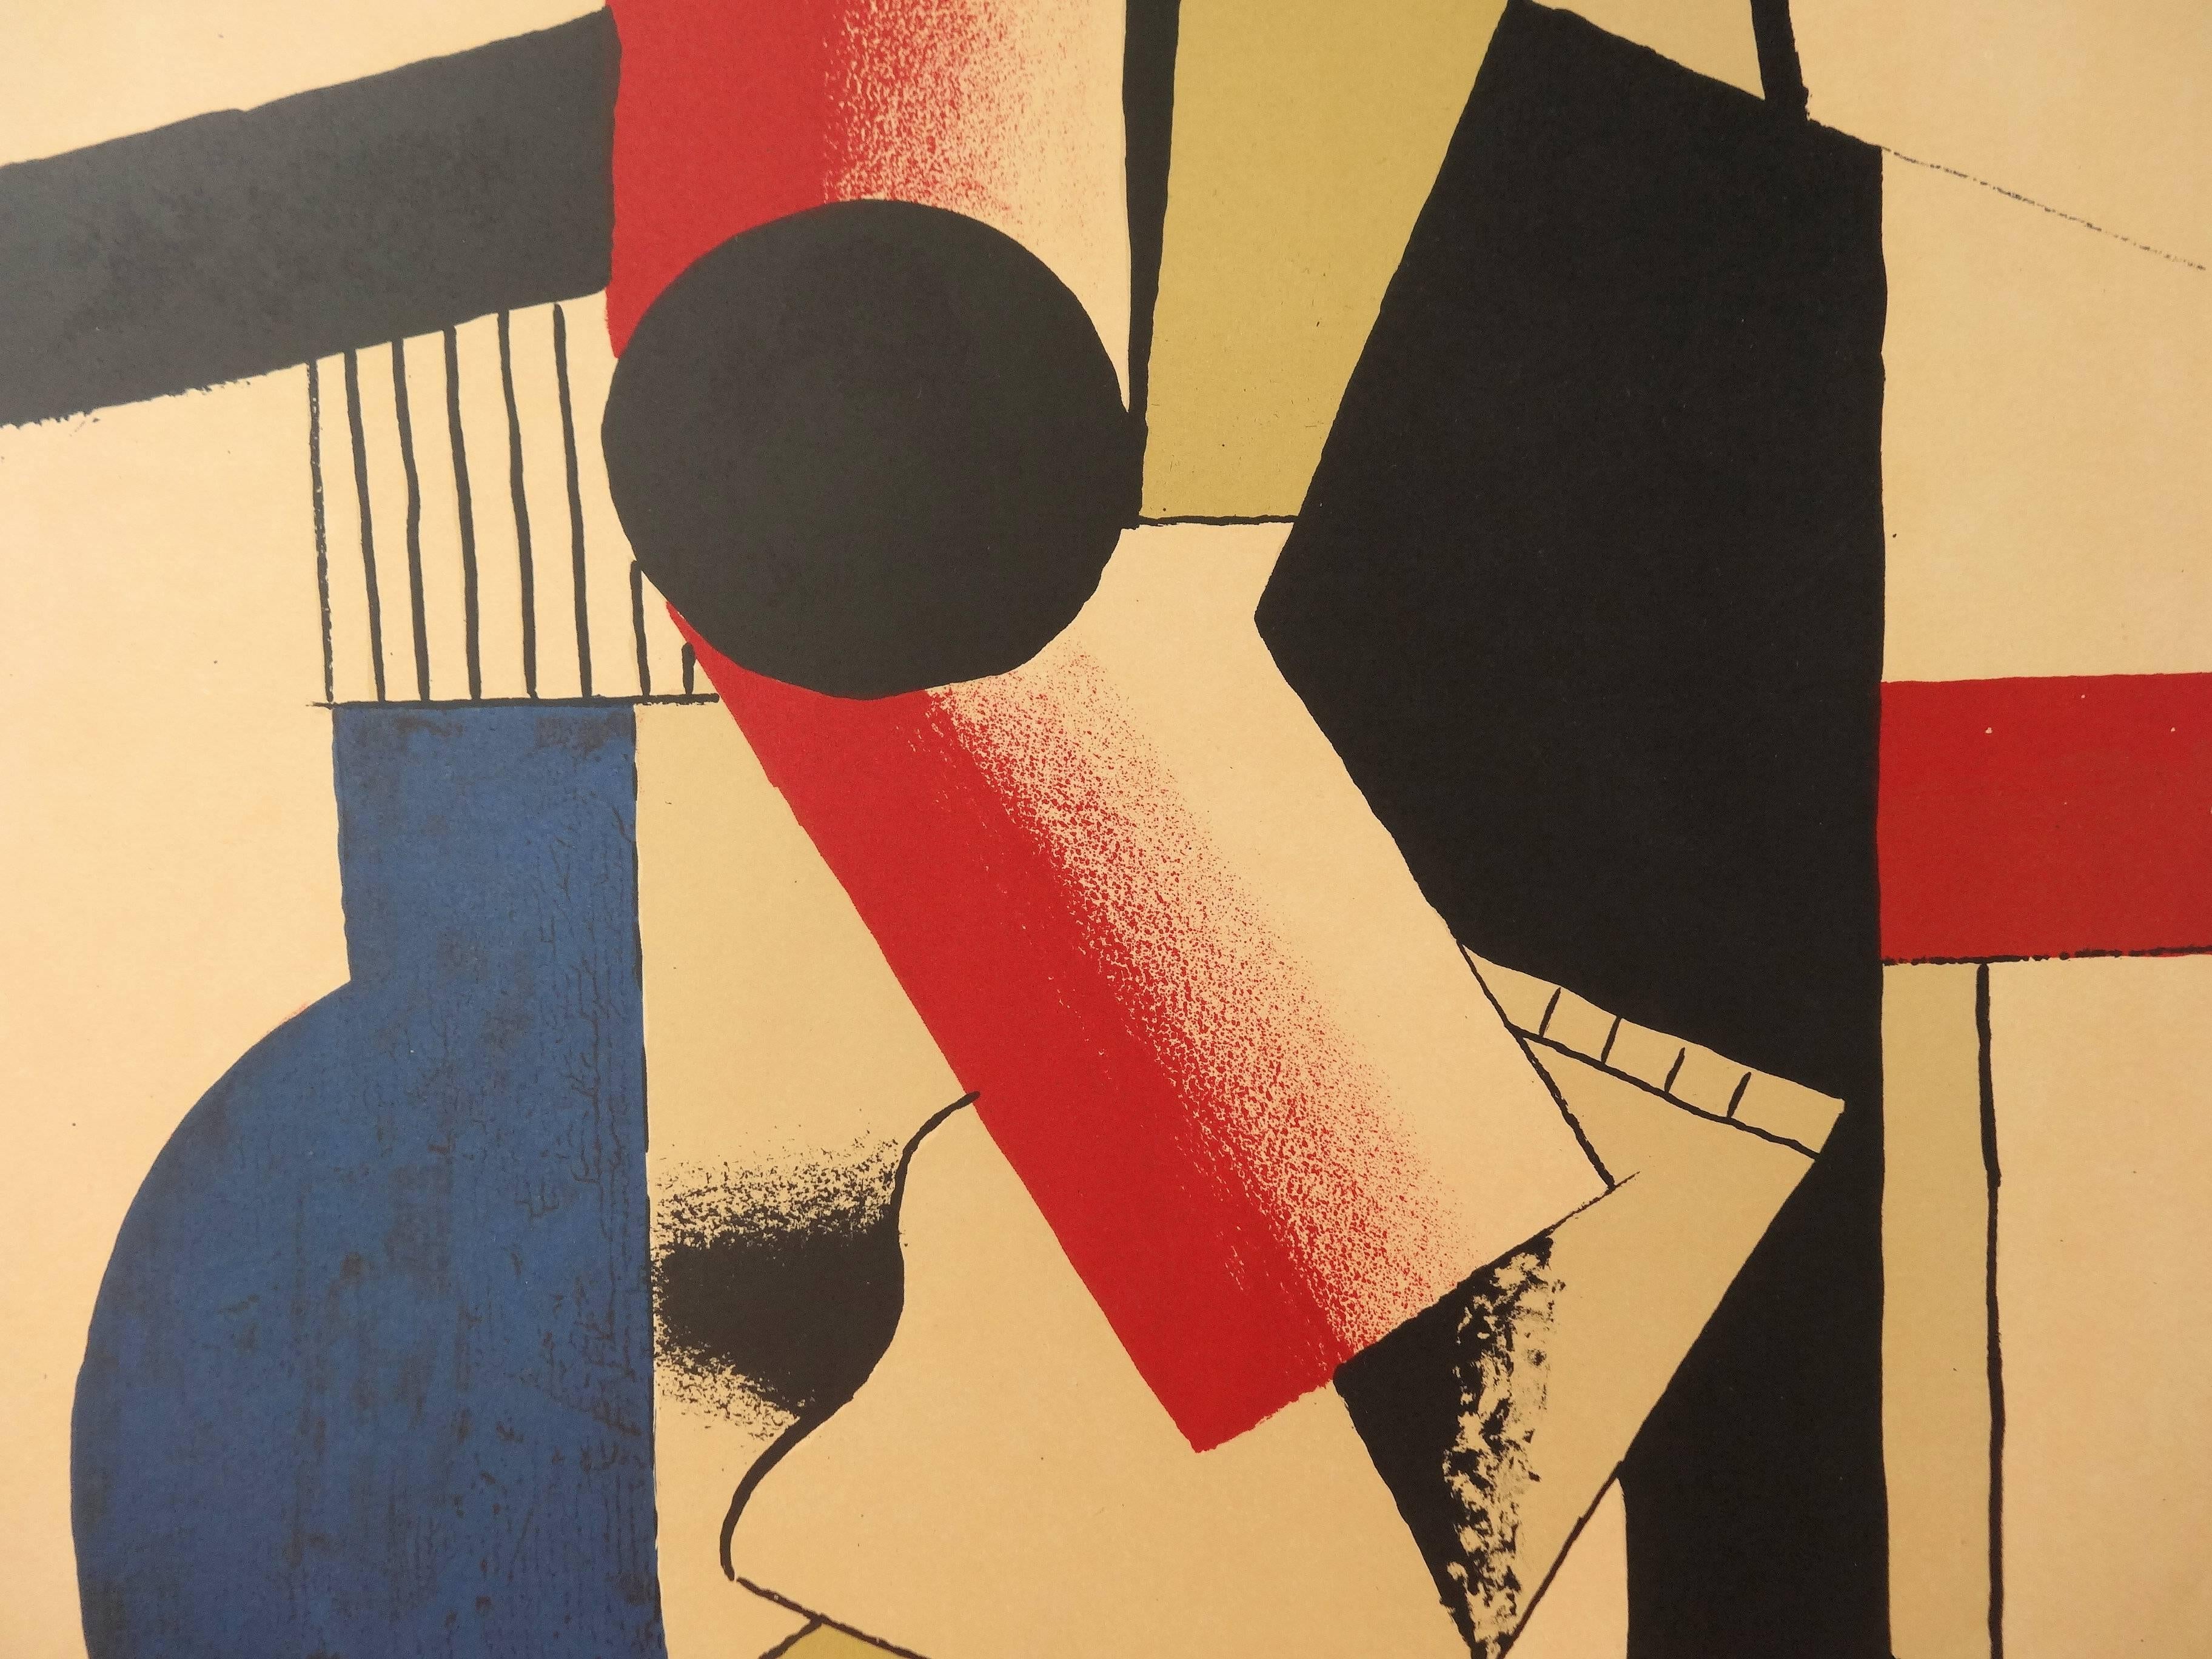 Fernand LÉGER (1881 - 1955)
Kubistische Gitarre

Lithographie nach einem Aquarell (gedruckt im Atelier Mourlot)
Unterschrift in der Platte gedruckt
Auf Papier 69 x 42 cm (ca. 28 x 17 Zoll)

Information : Plakat für die Ausstellung 